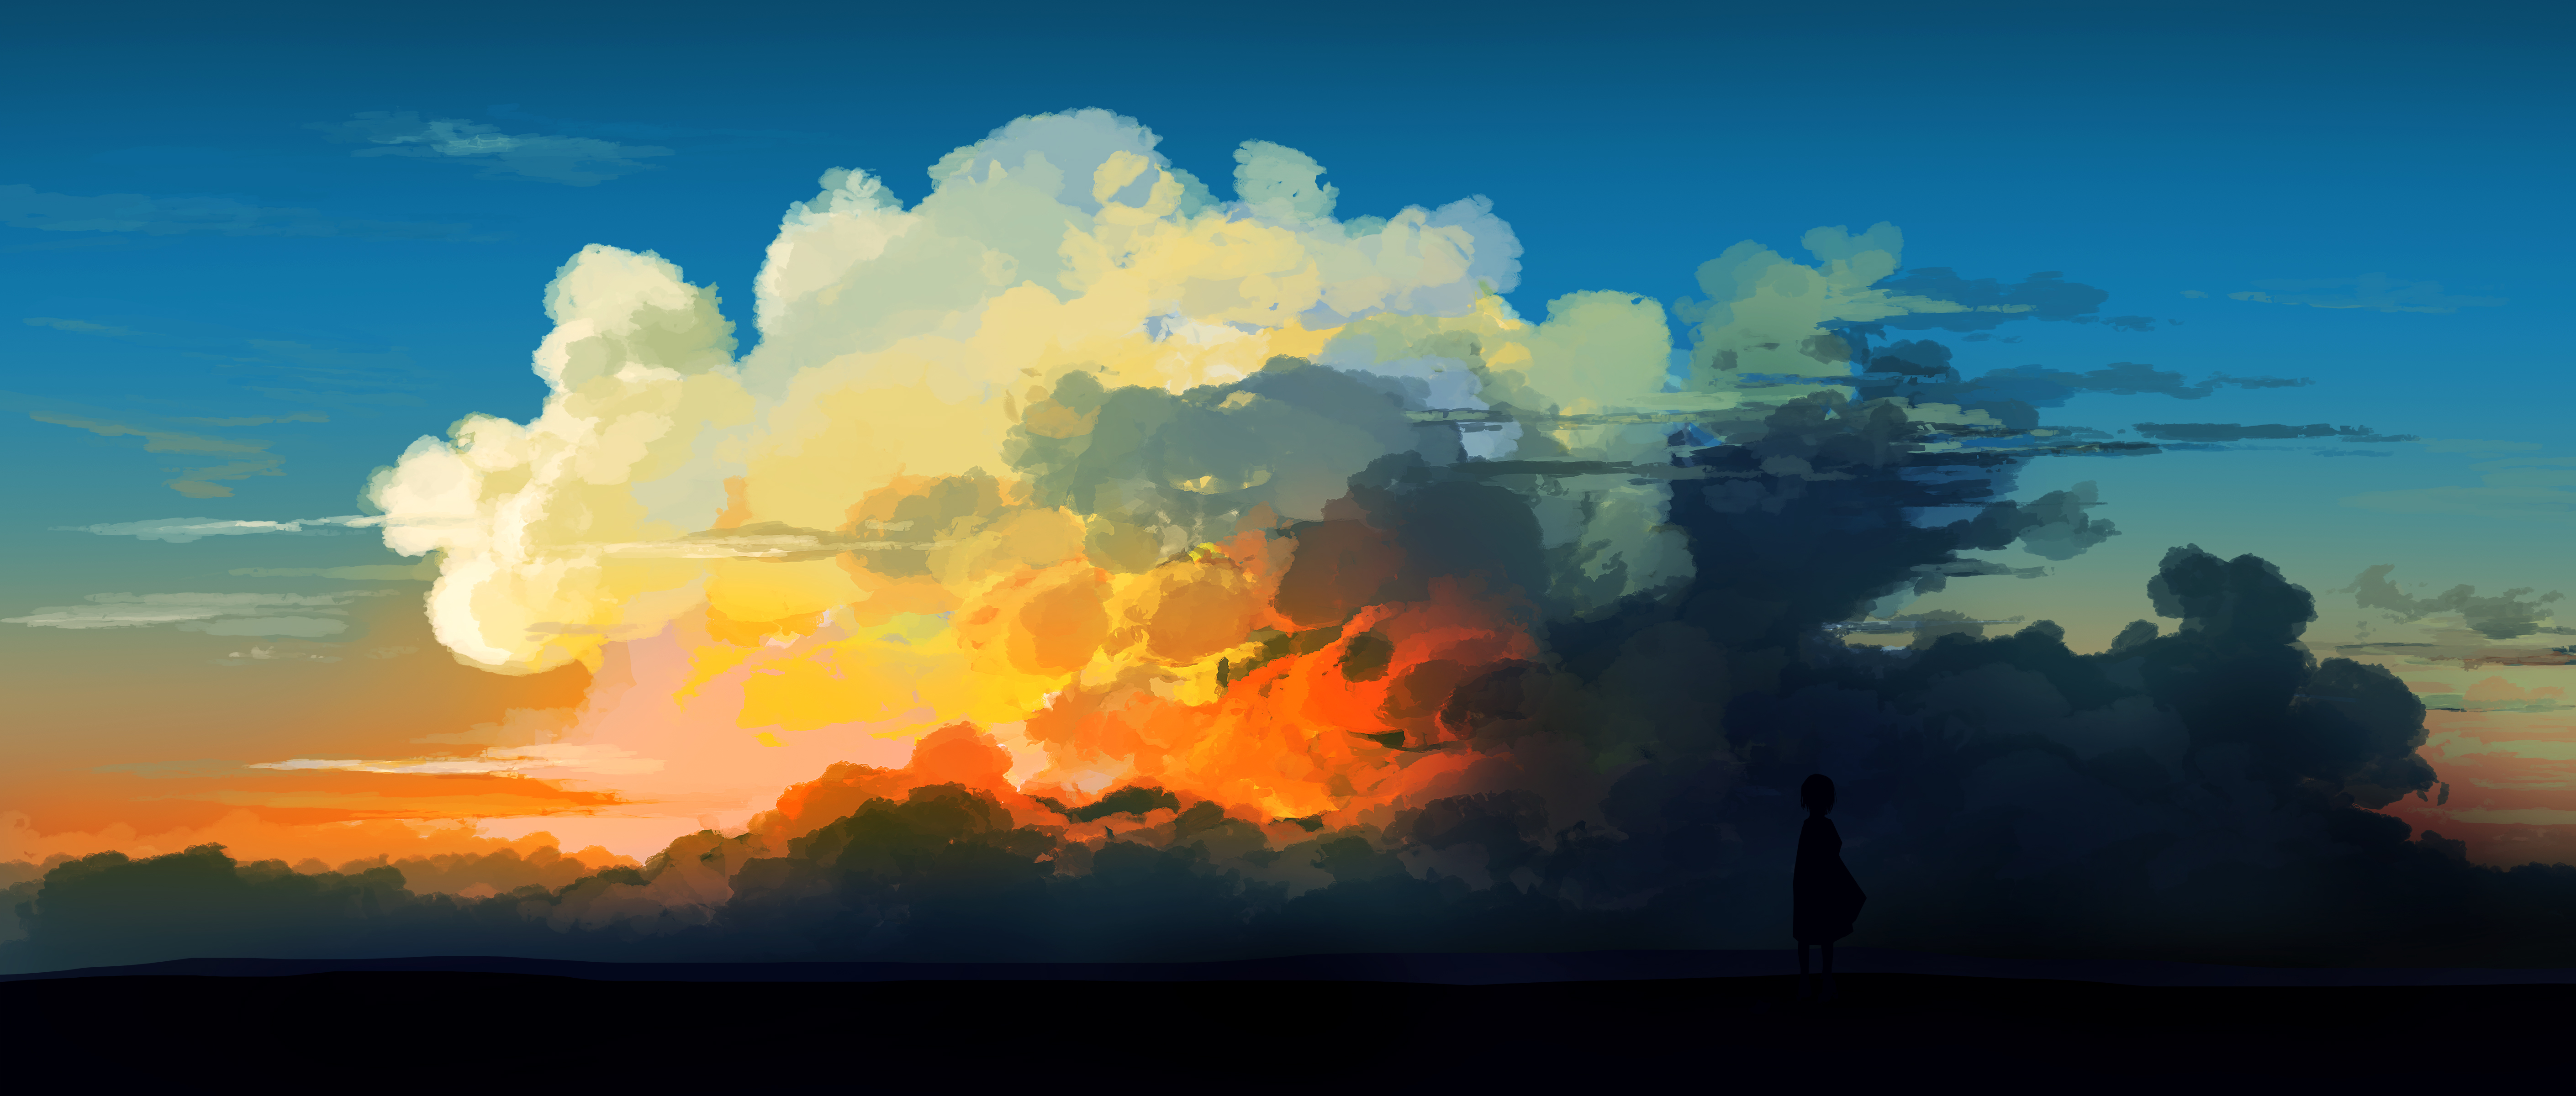 Gracile Digital Digital Art Artwork Illustration Drawing Clouds Sunset Landscape 5640x2400